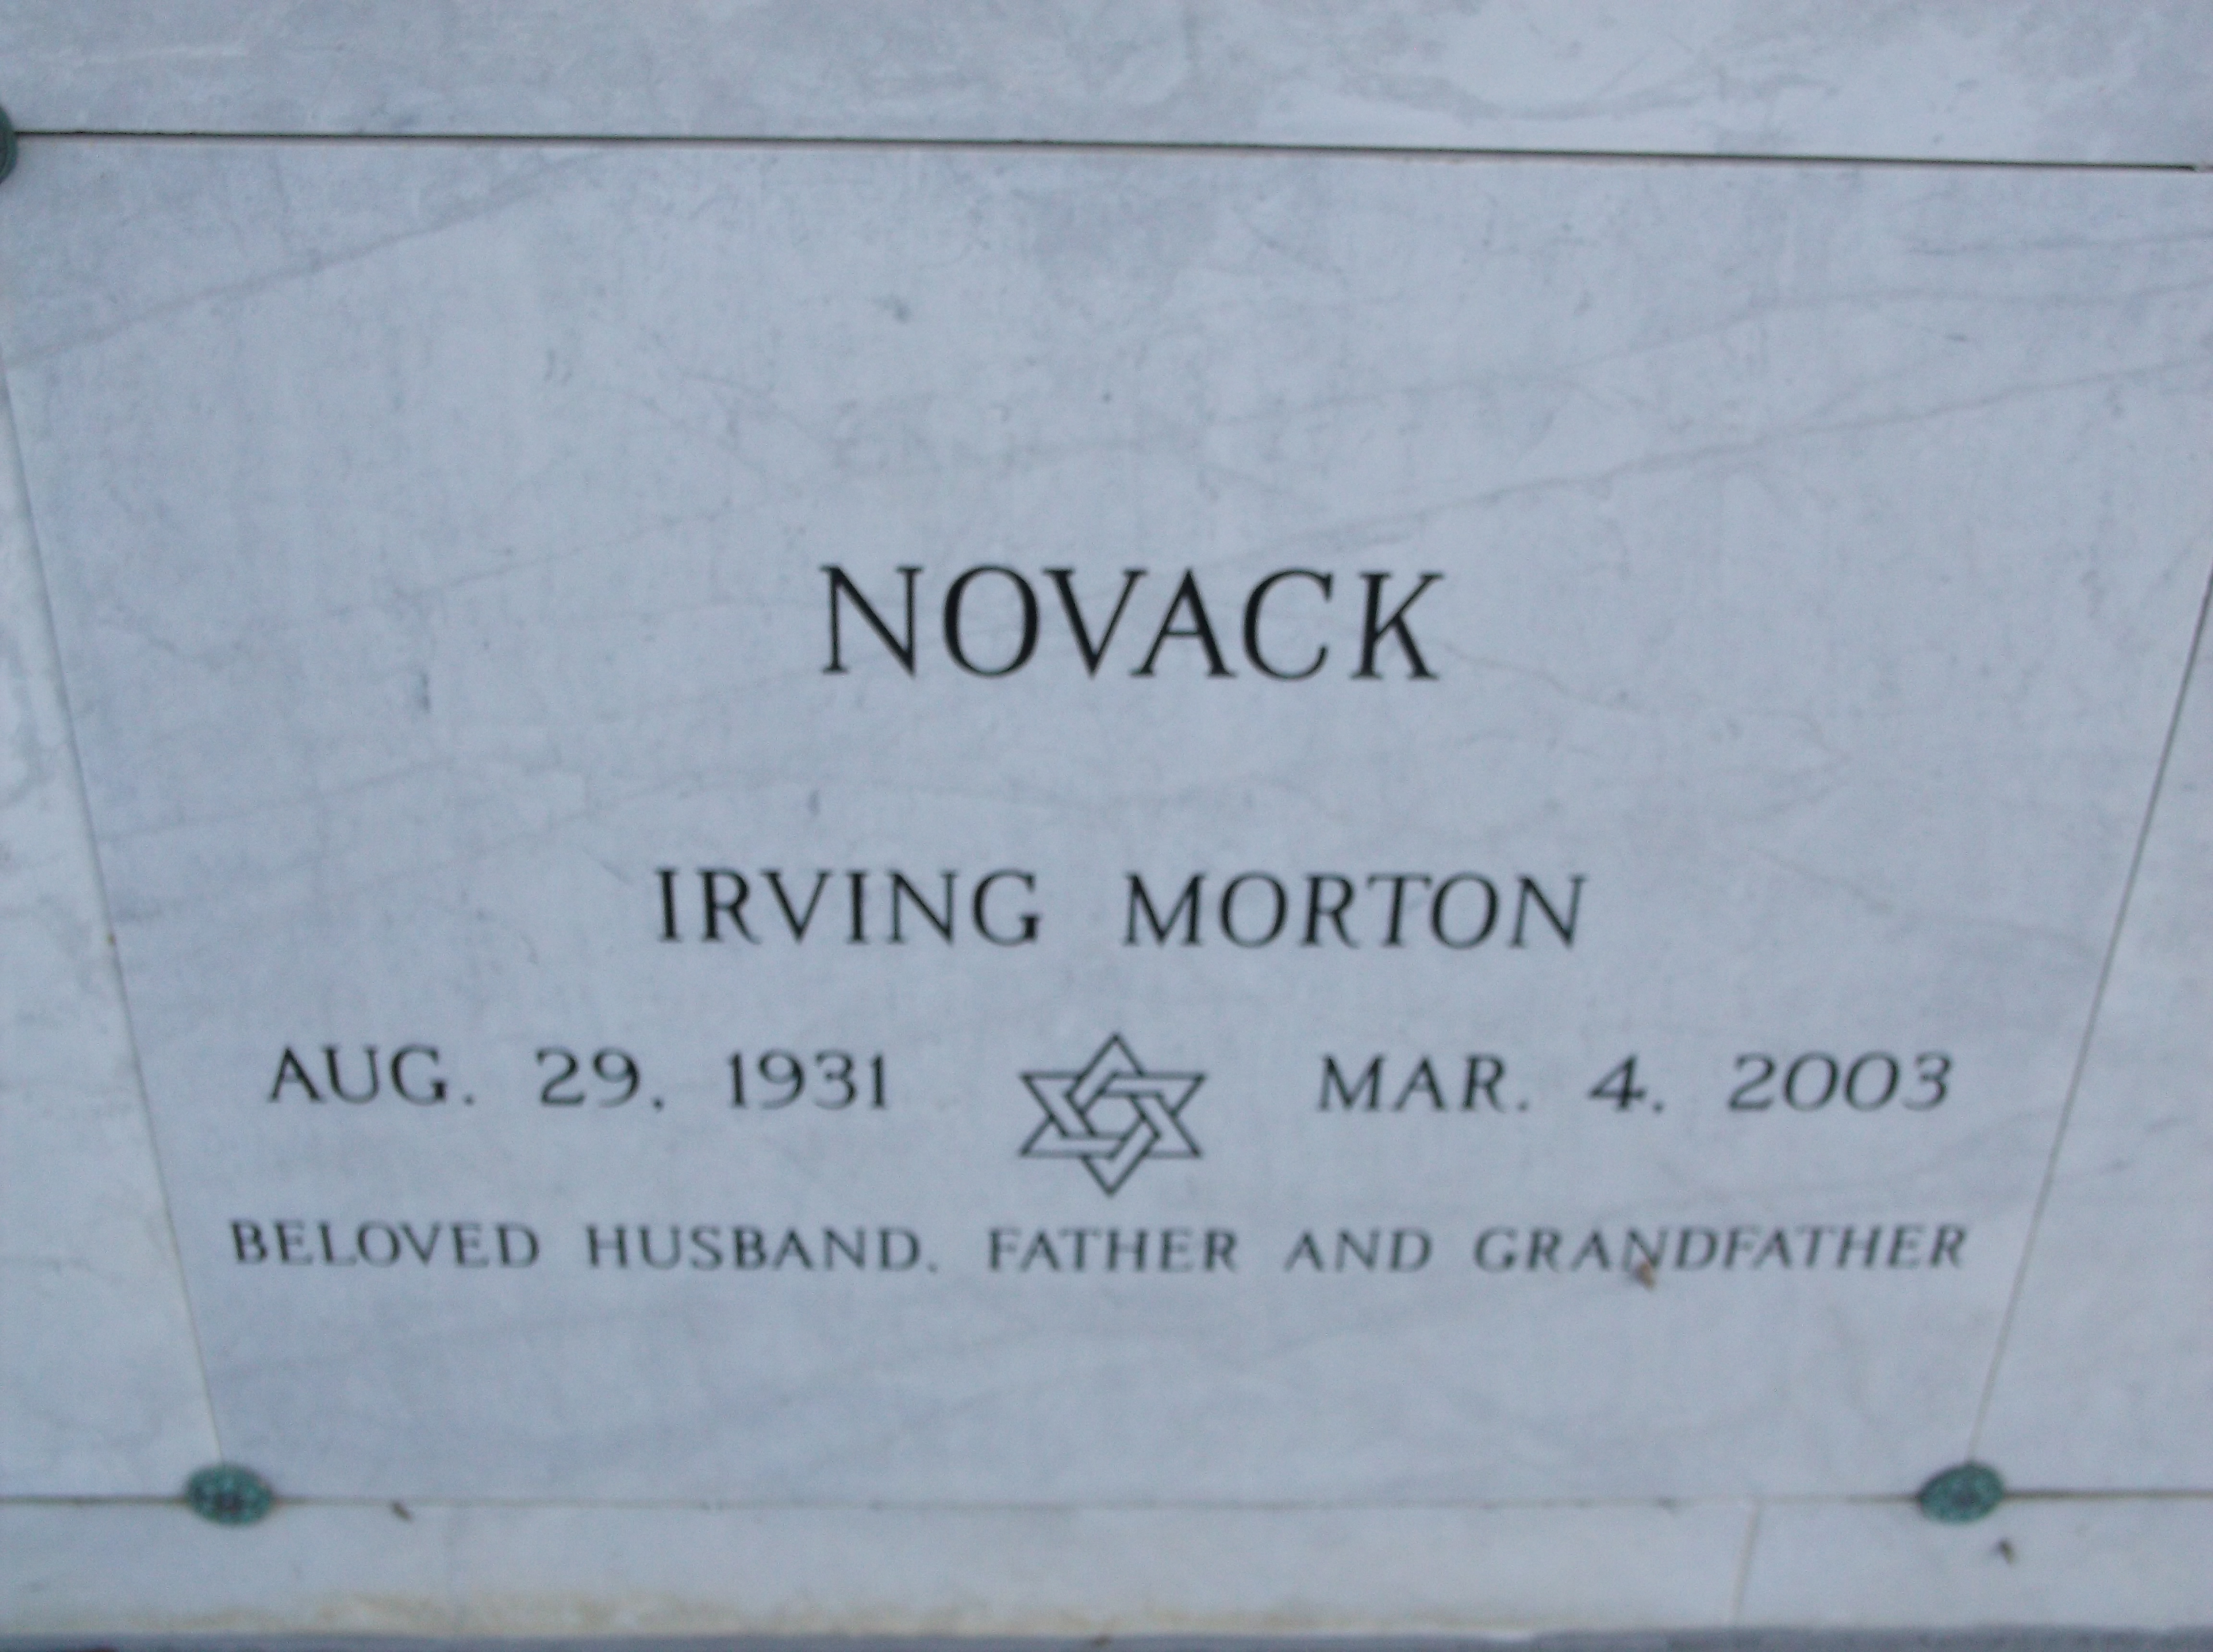 Irving Morton Novack